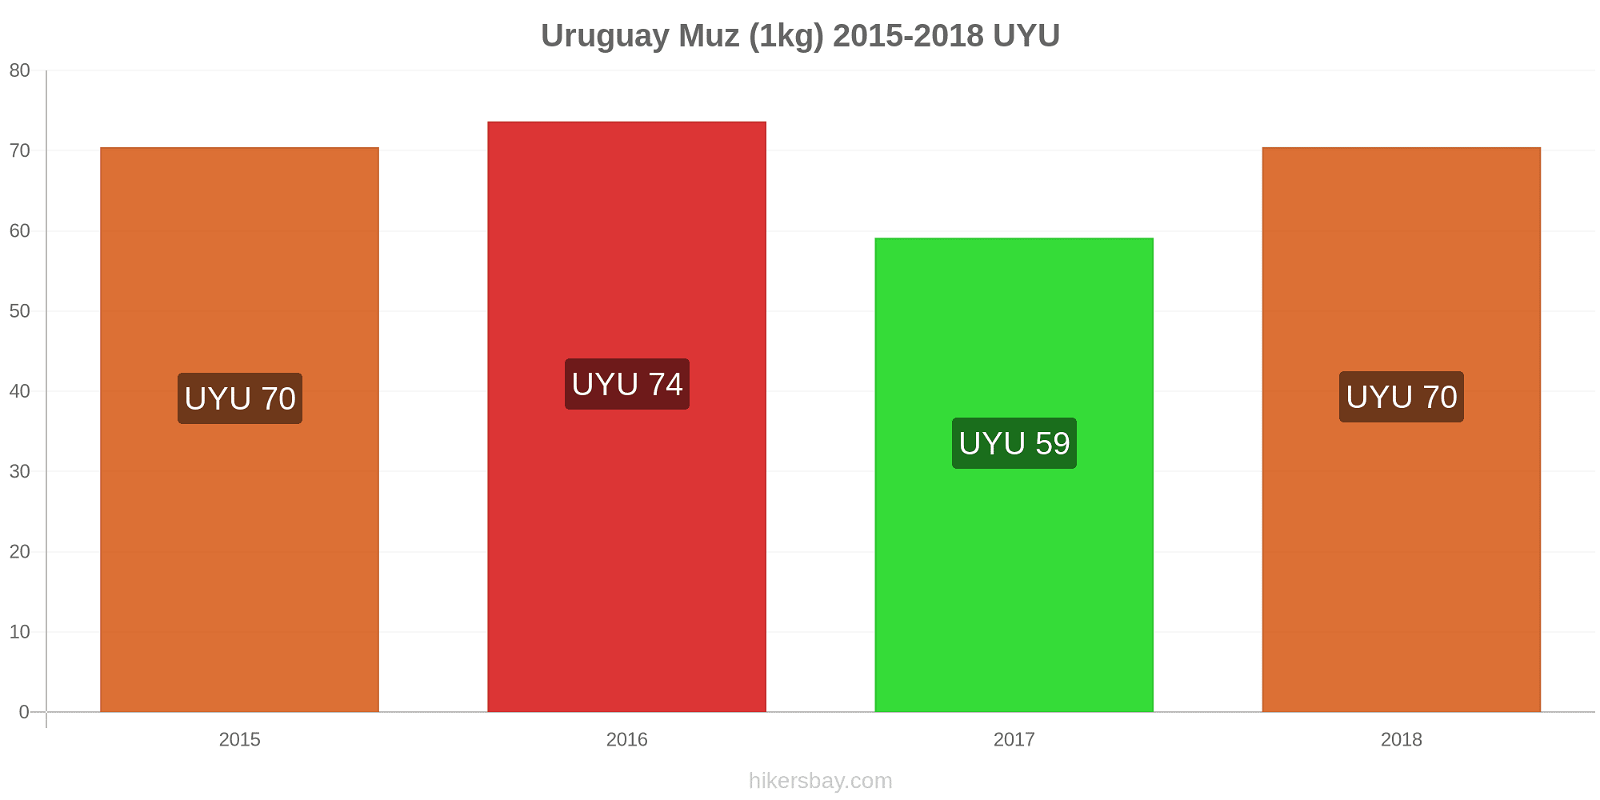 Uruguay fiyat değişiklikleri Muzlar (1kg) hikersbay.com